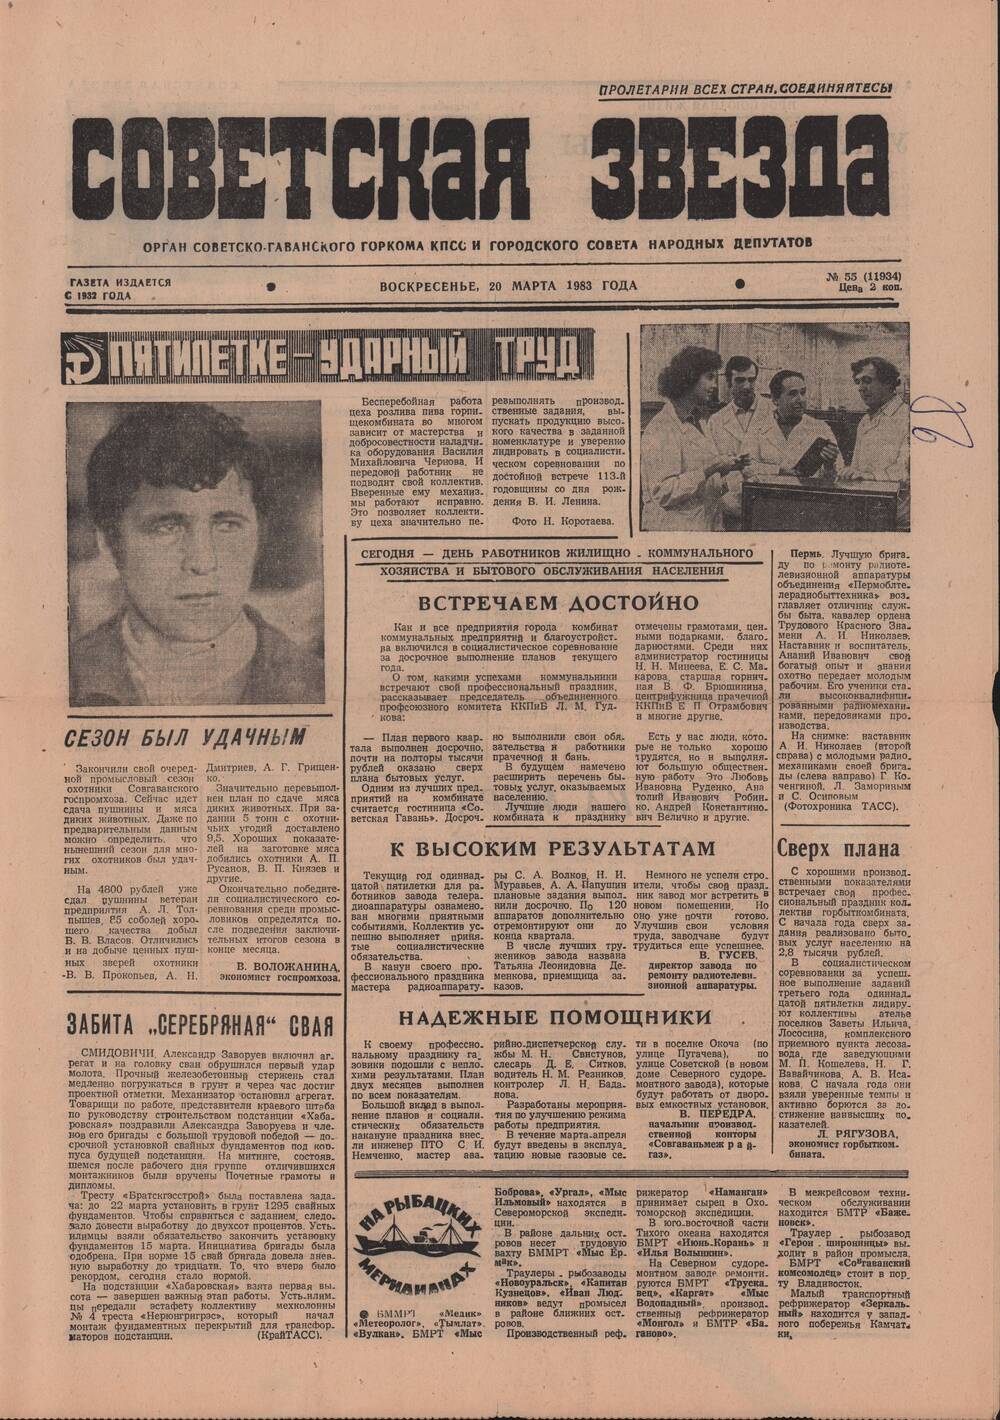 Газета «Советская звезда» № 55 от 20 марта 1983 г. о работниках бытового обслуживания населения.